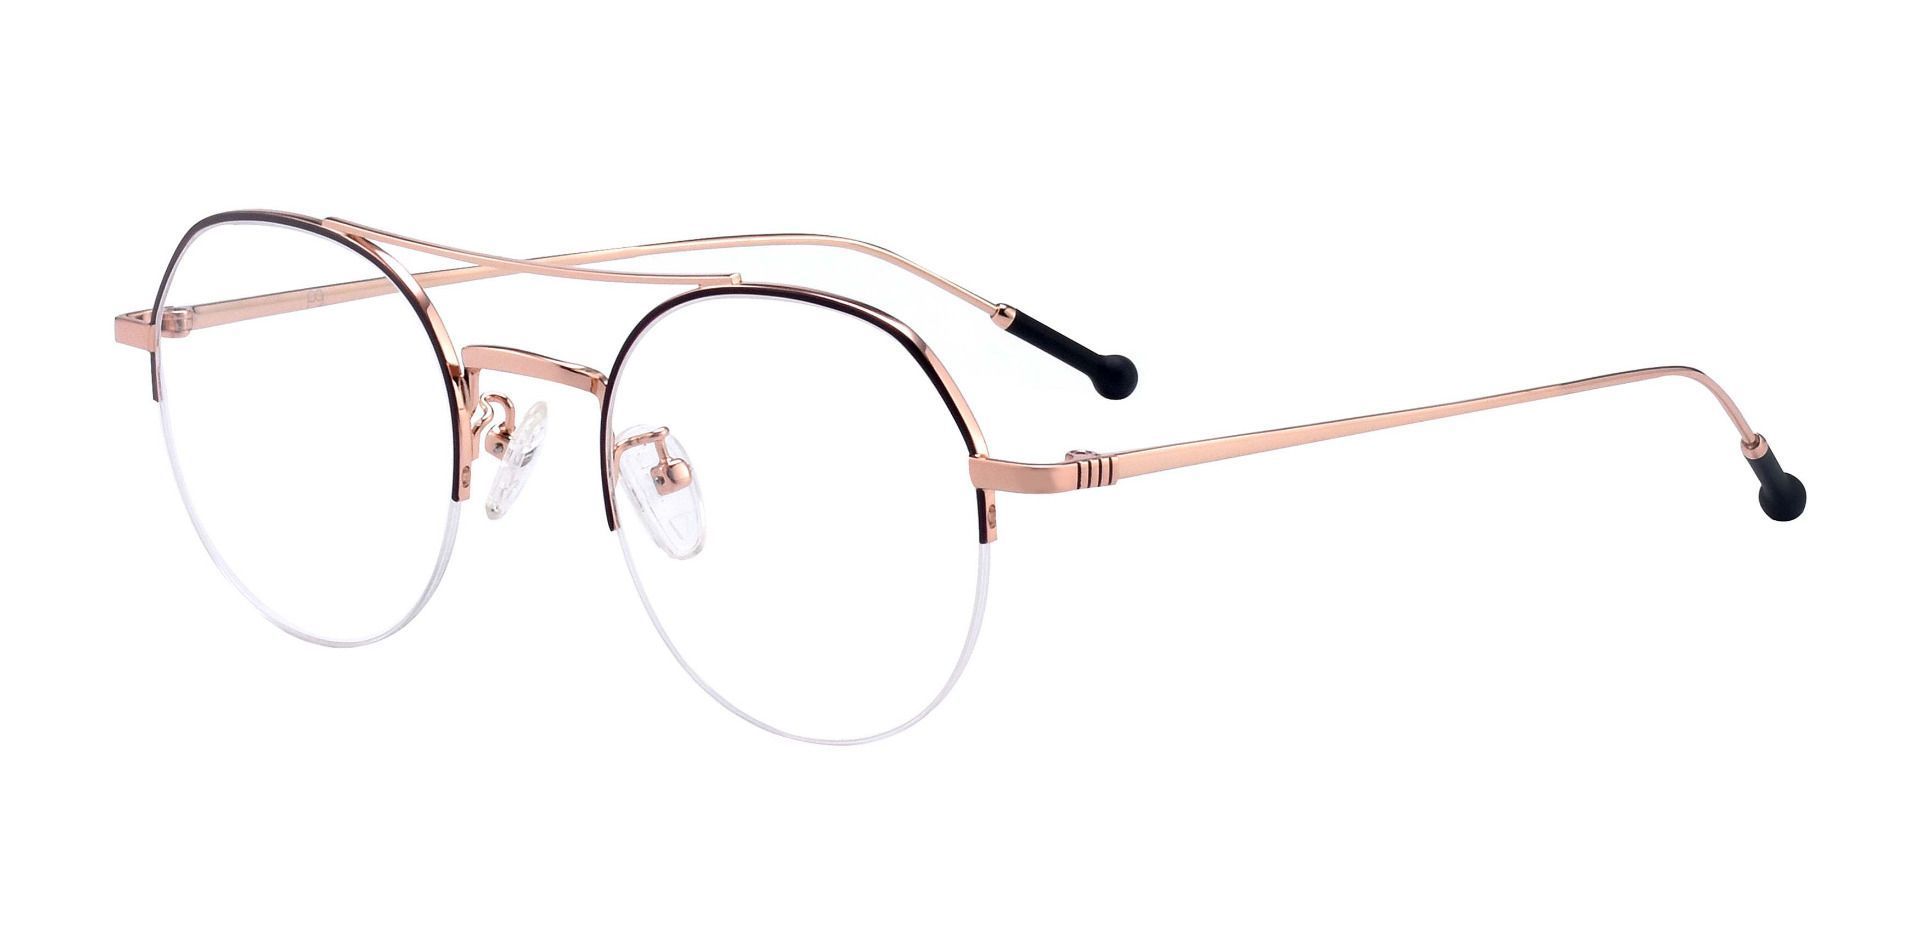 Splendor Oval Eyeglasses Frame - Cordovan/rose | Women's Eyeglasses ...